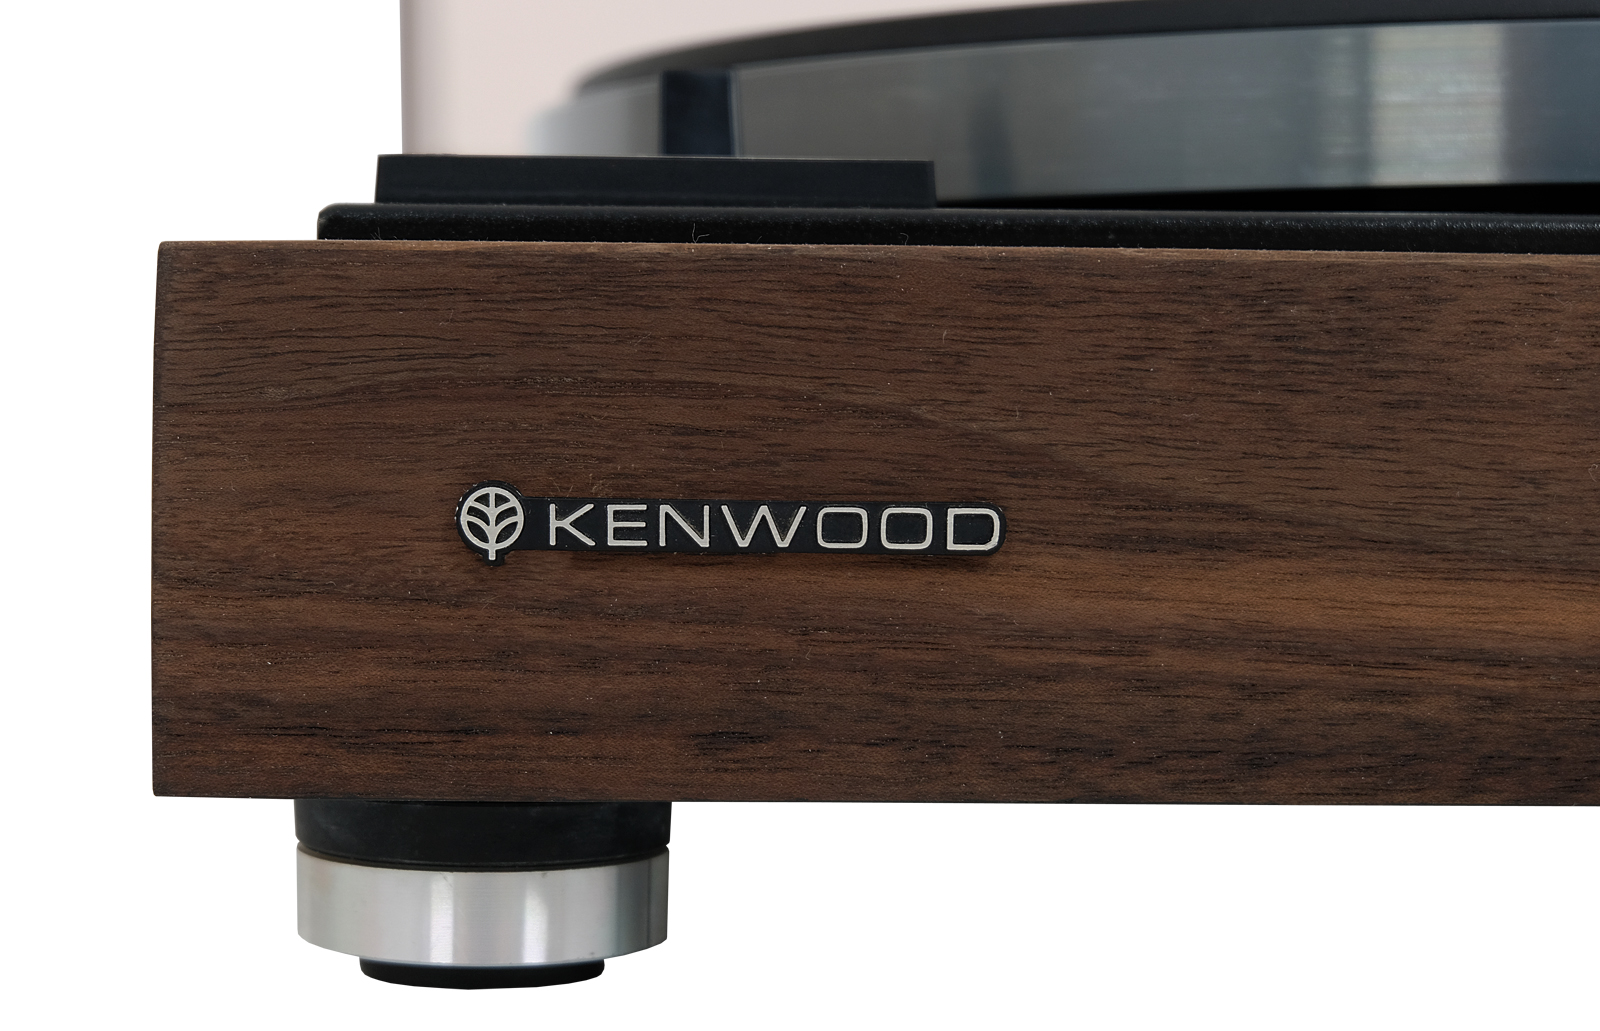 Kenwood KD 1033 turntable